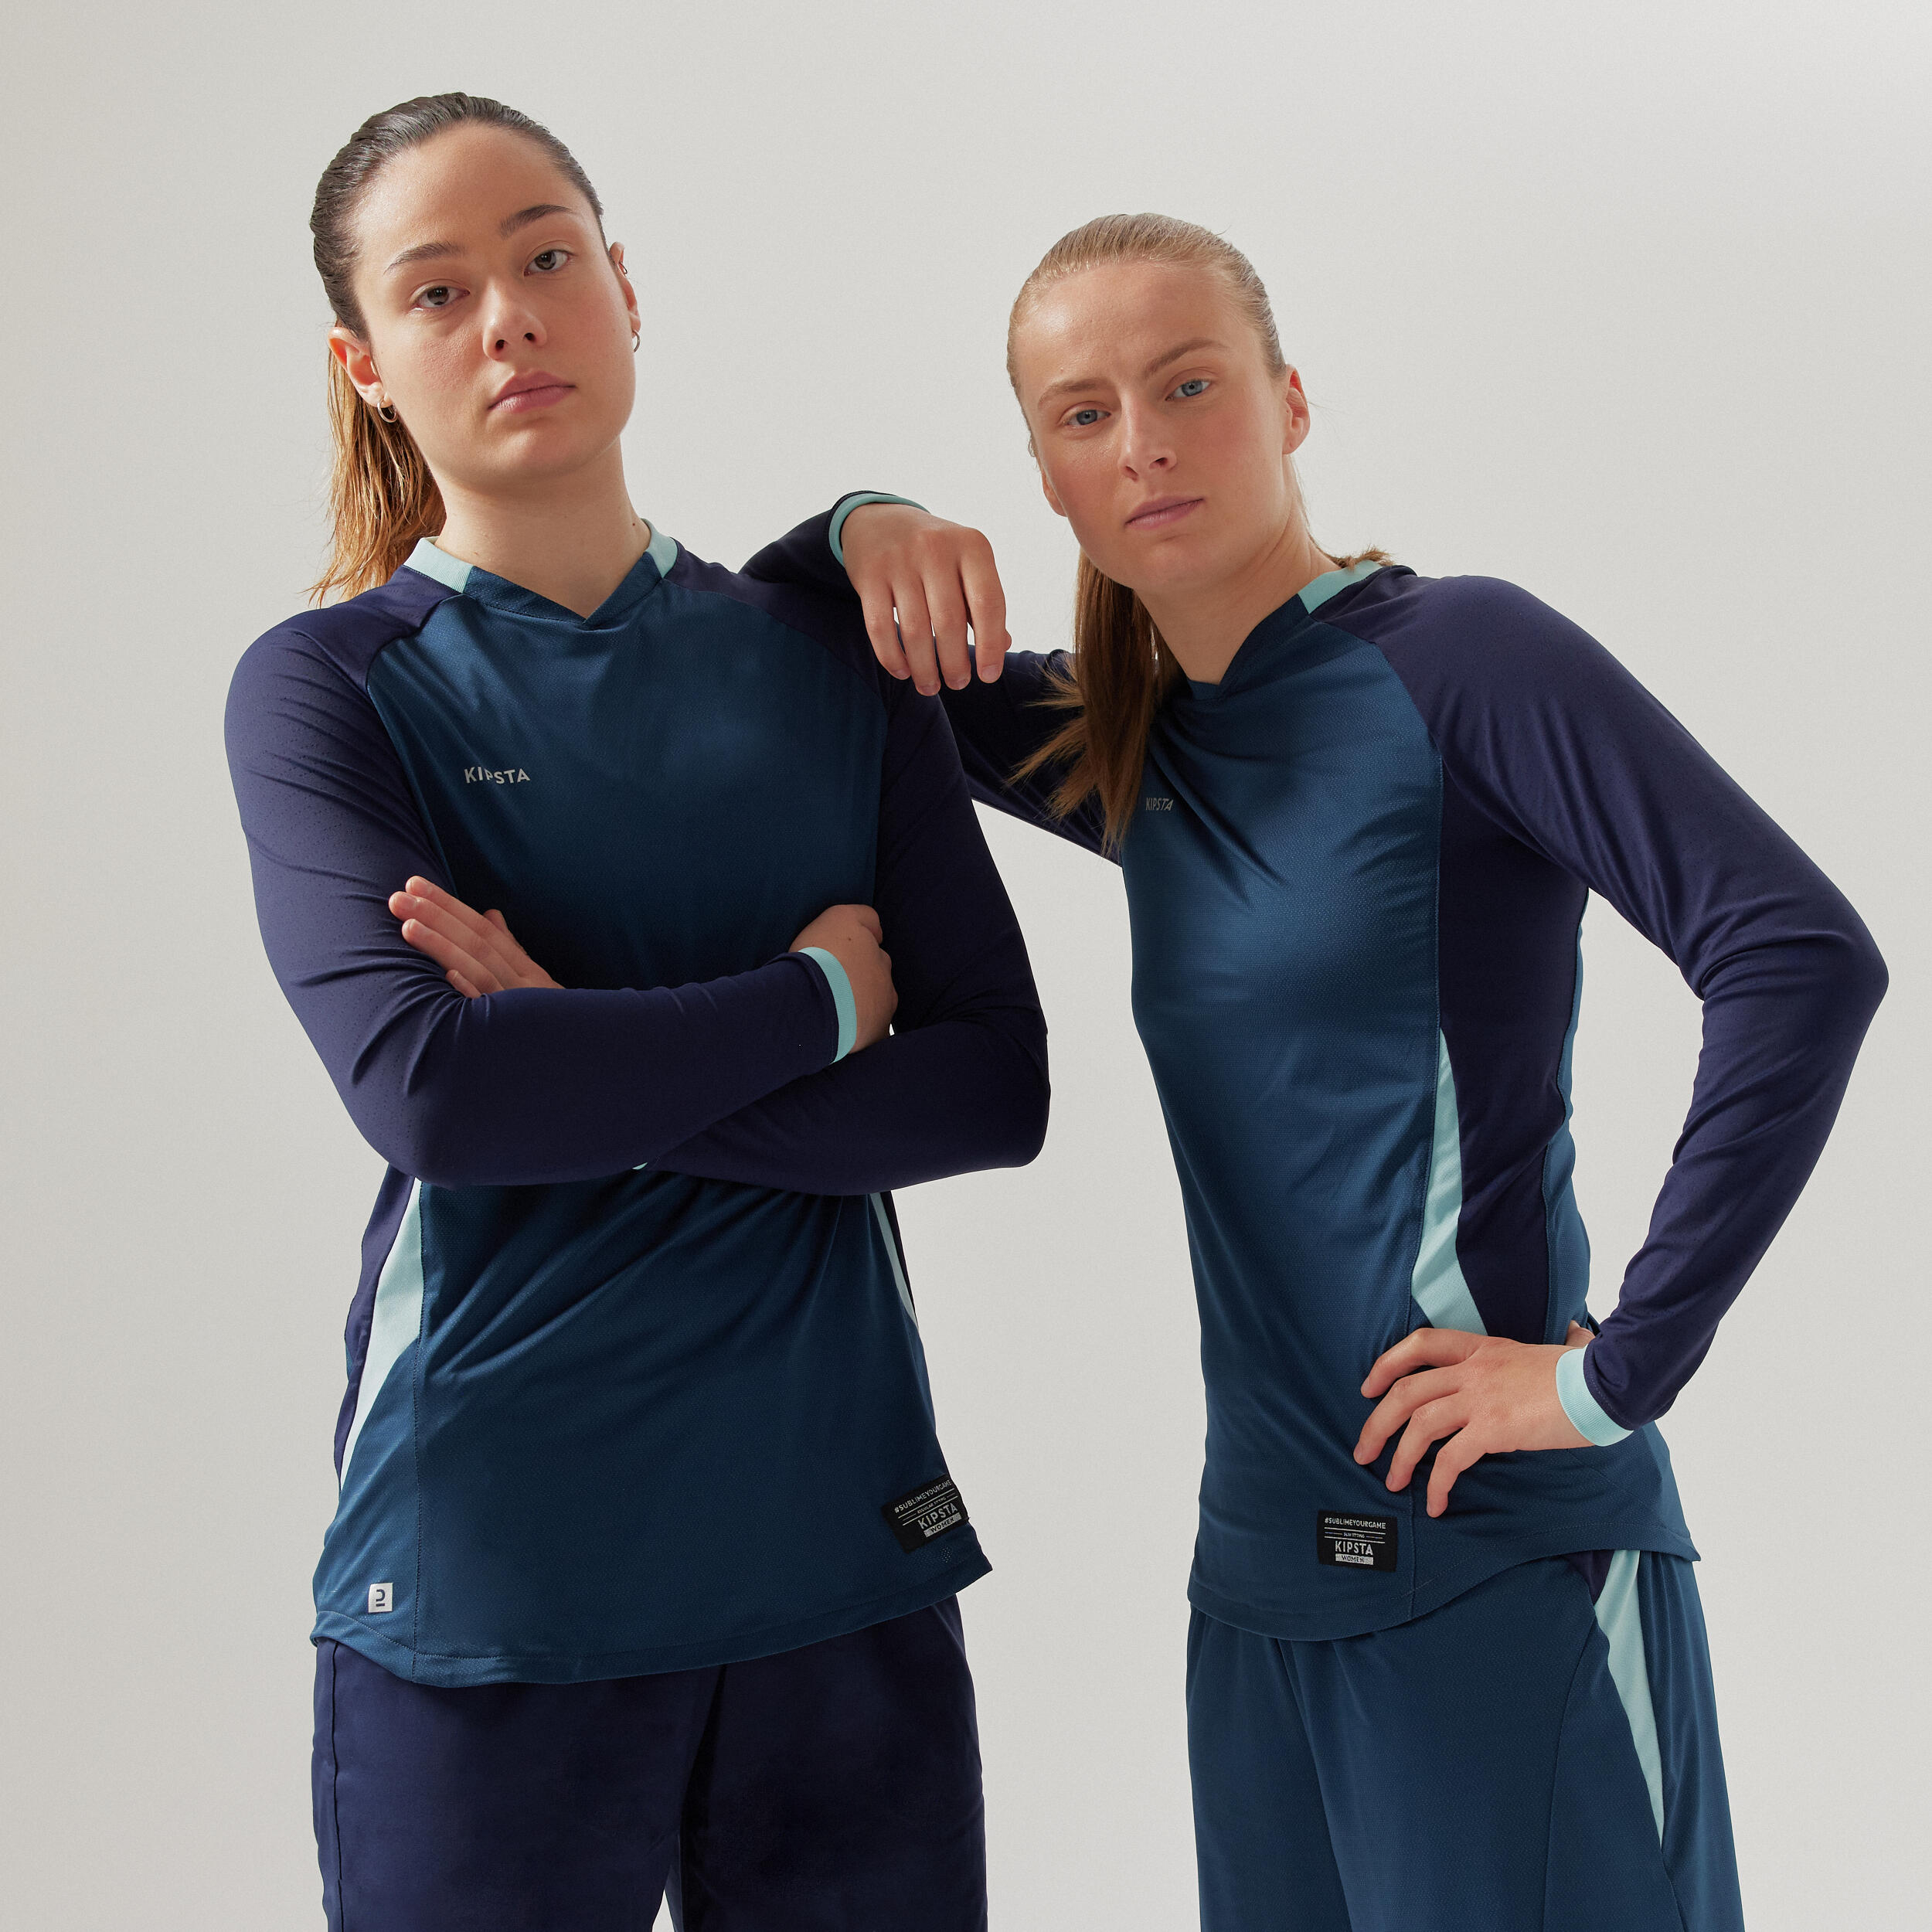 Women's Long-Sleeved Straight Cut Football Shirt - Blue 2/3